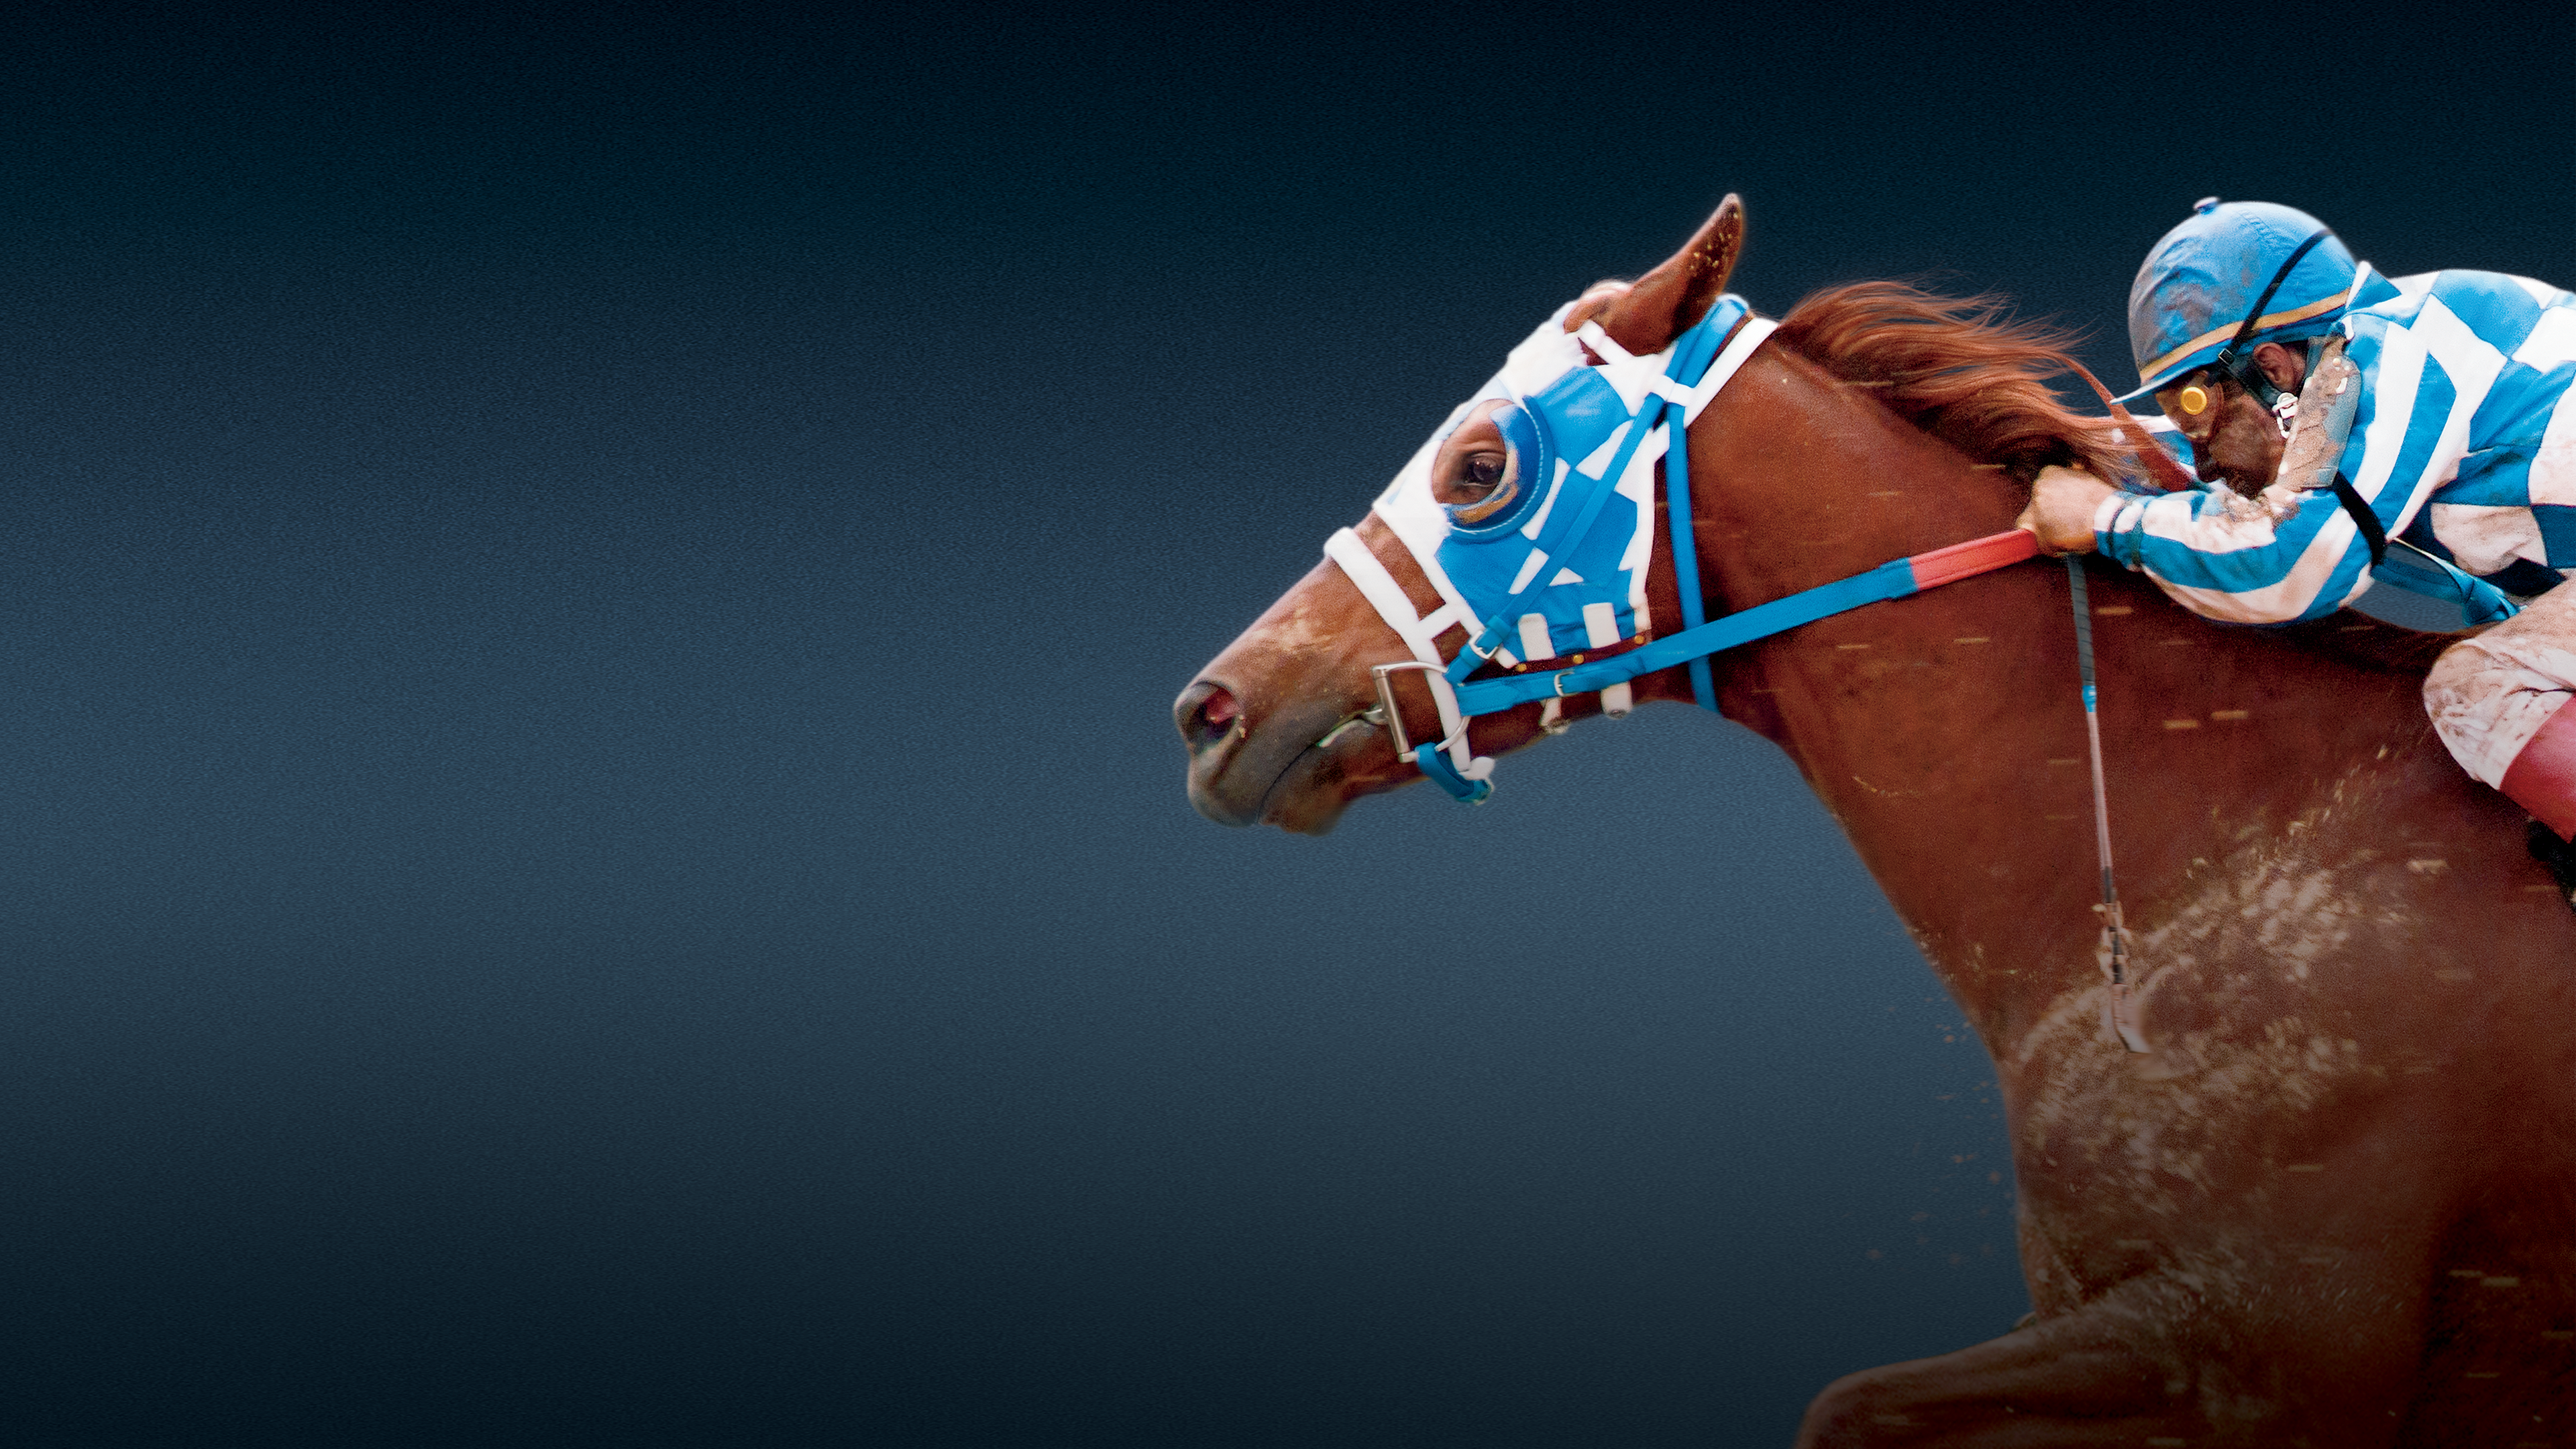 Secretariat – Ein Pferd wird zur Legende